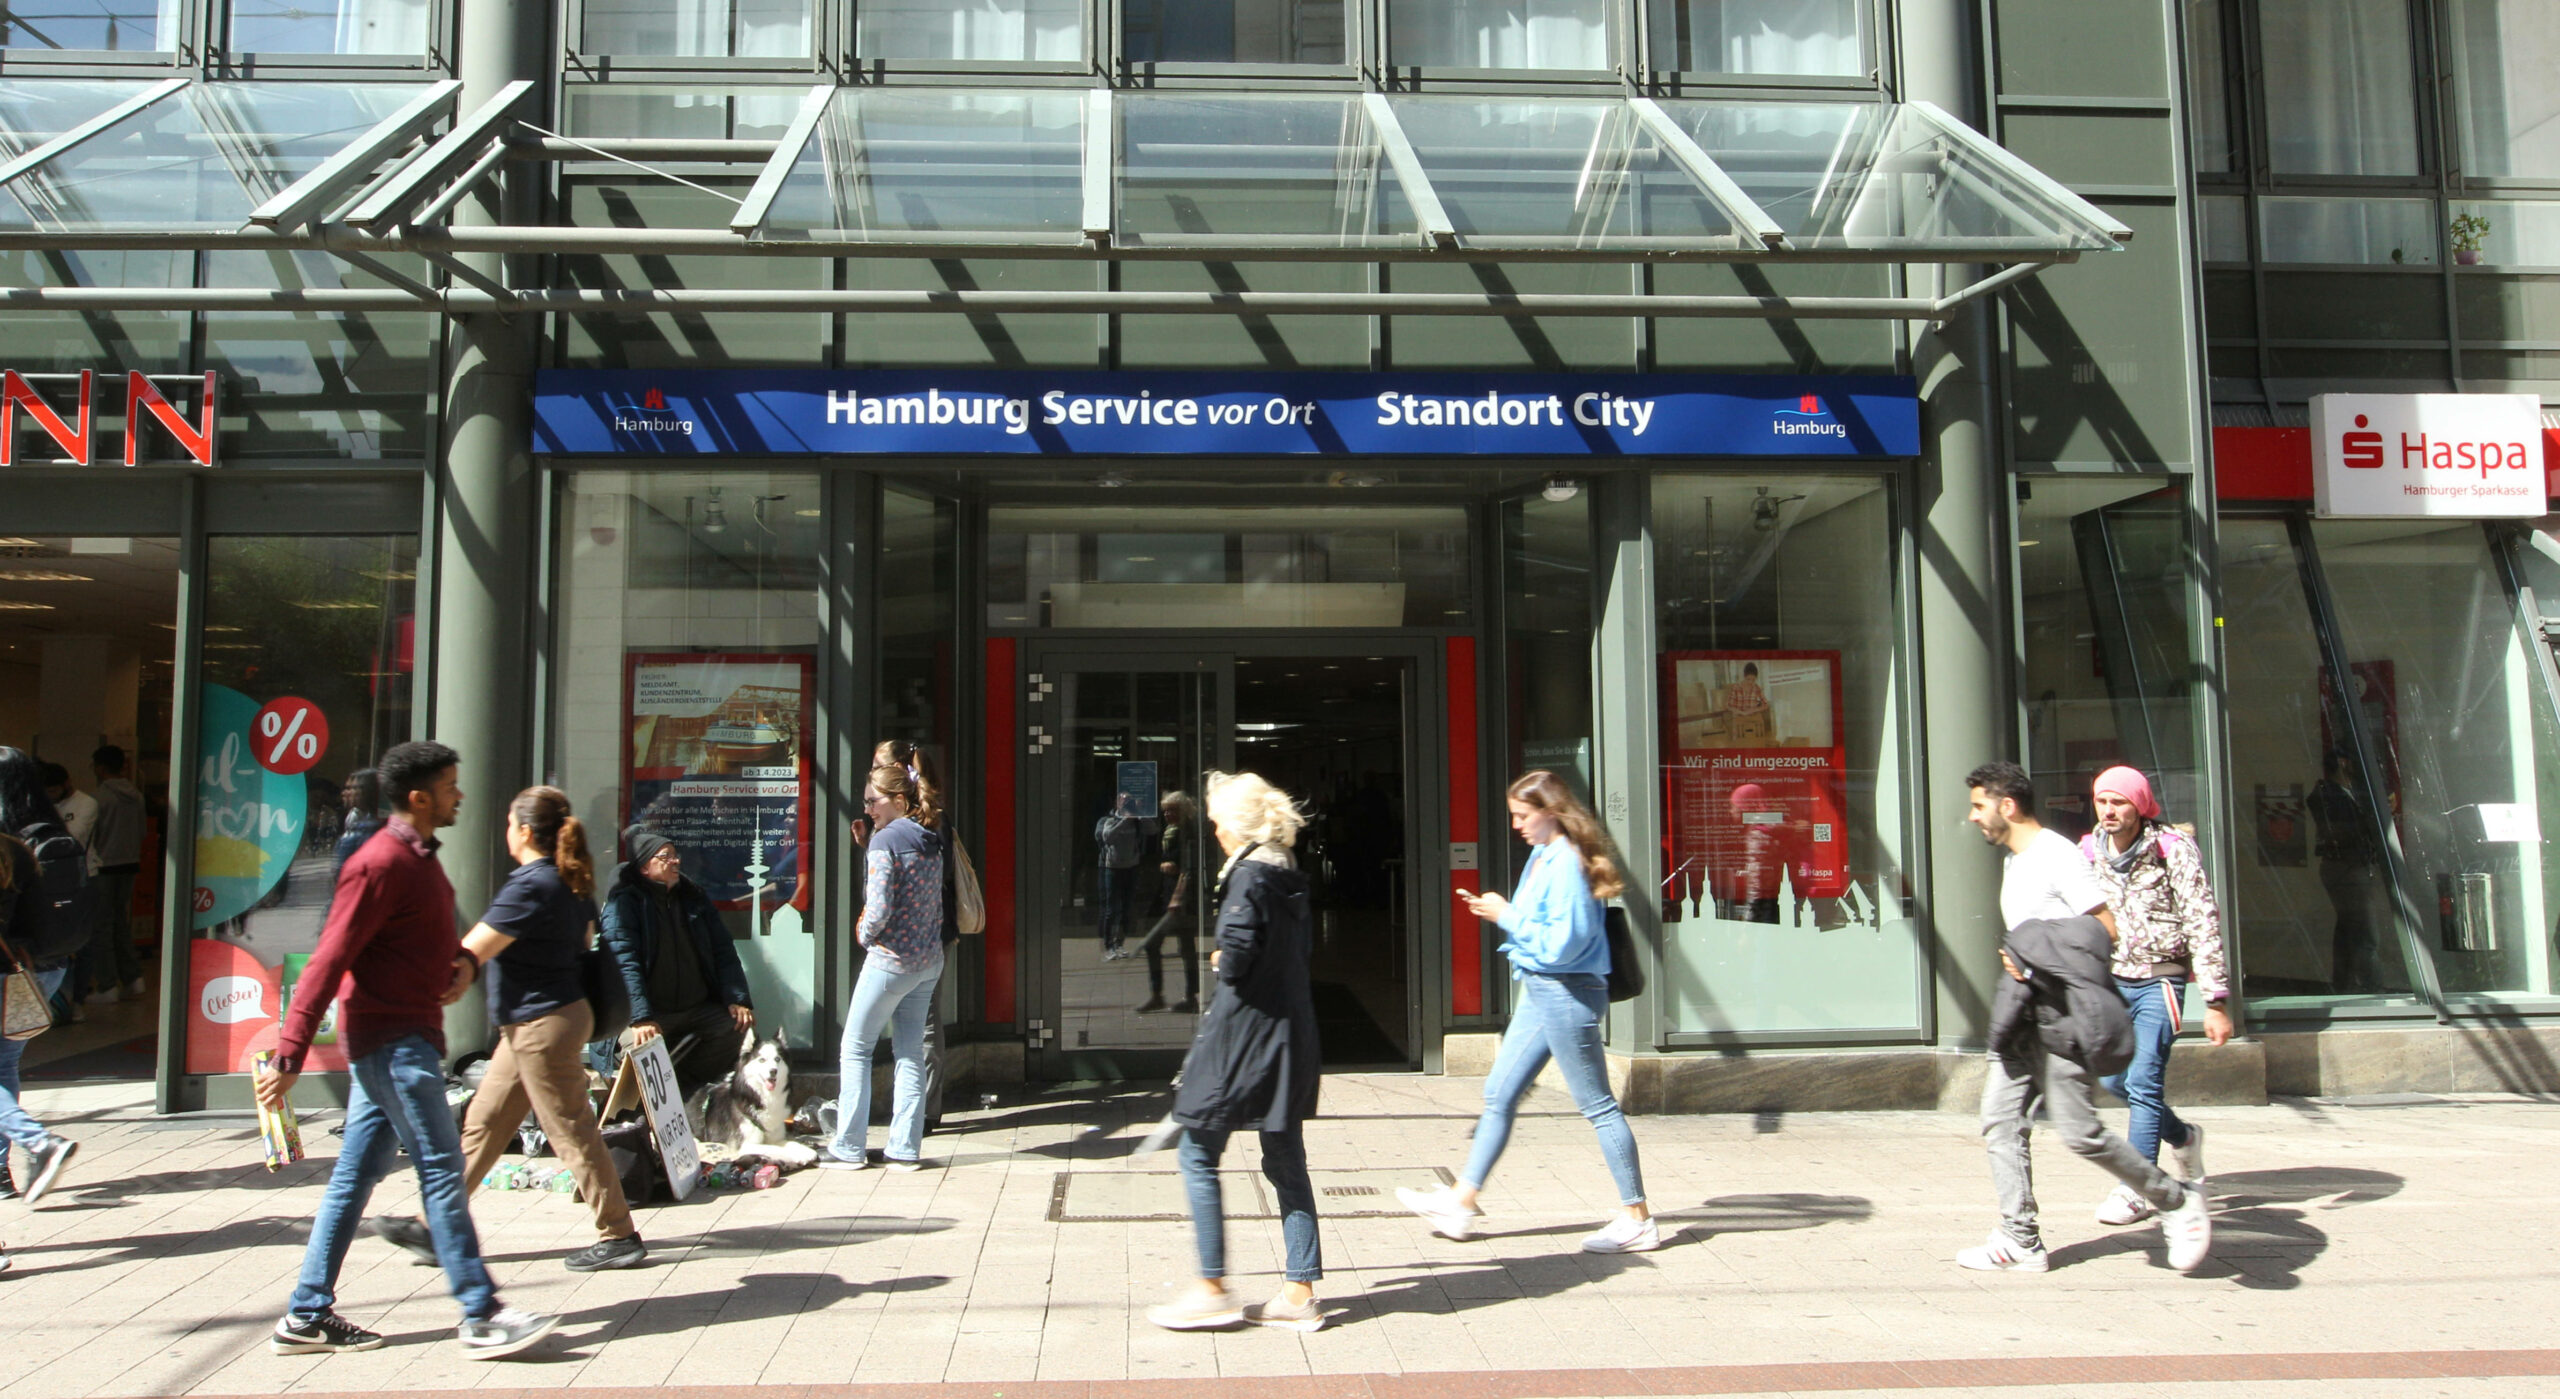 Auch Hamburgs Kundenzentren sind betroffen – hier der Standort von „Hamburg Service vor Ort“ in der Spitalerstraße.